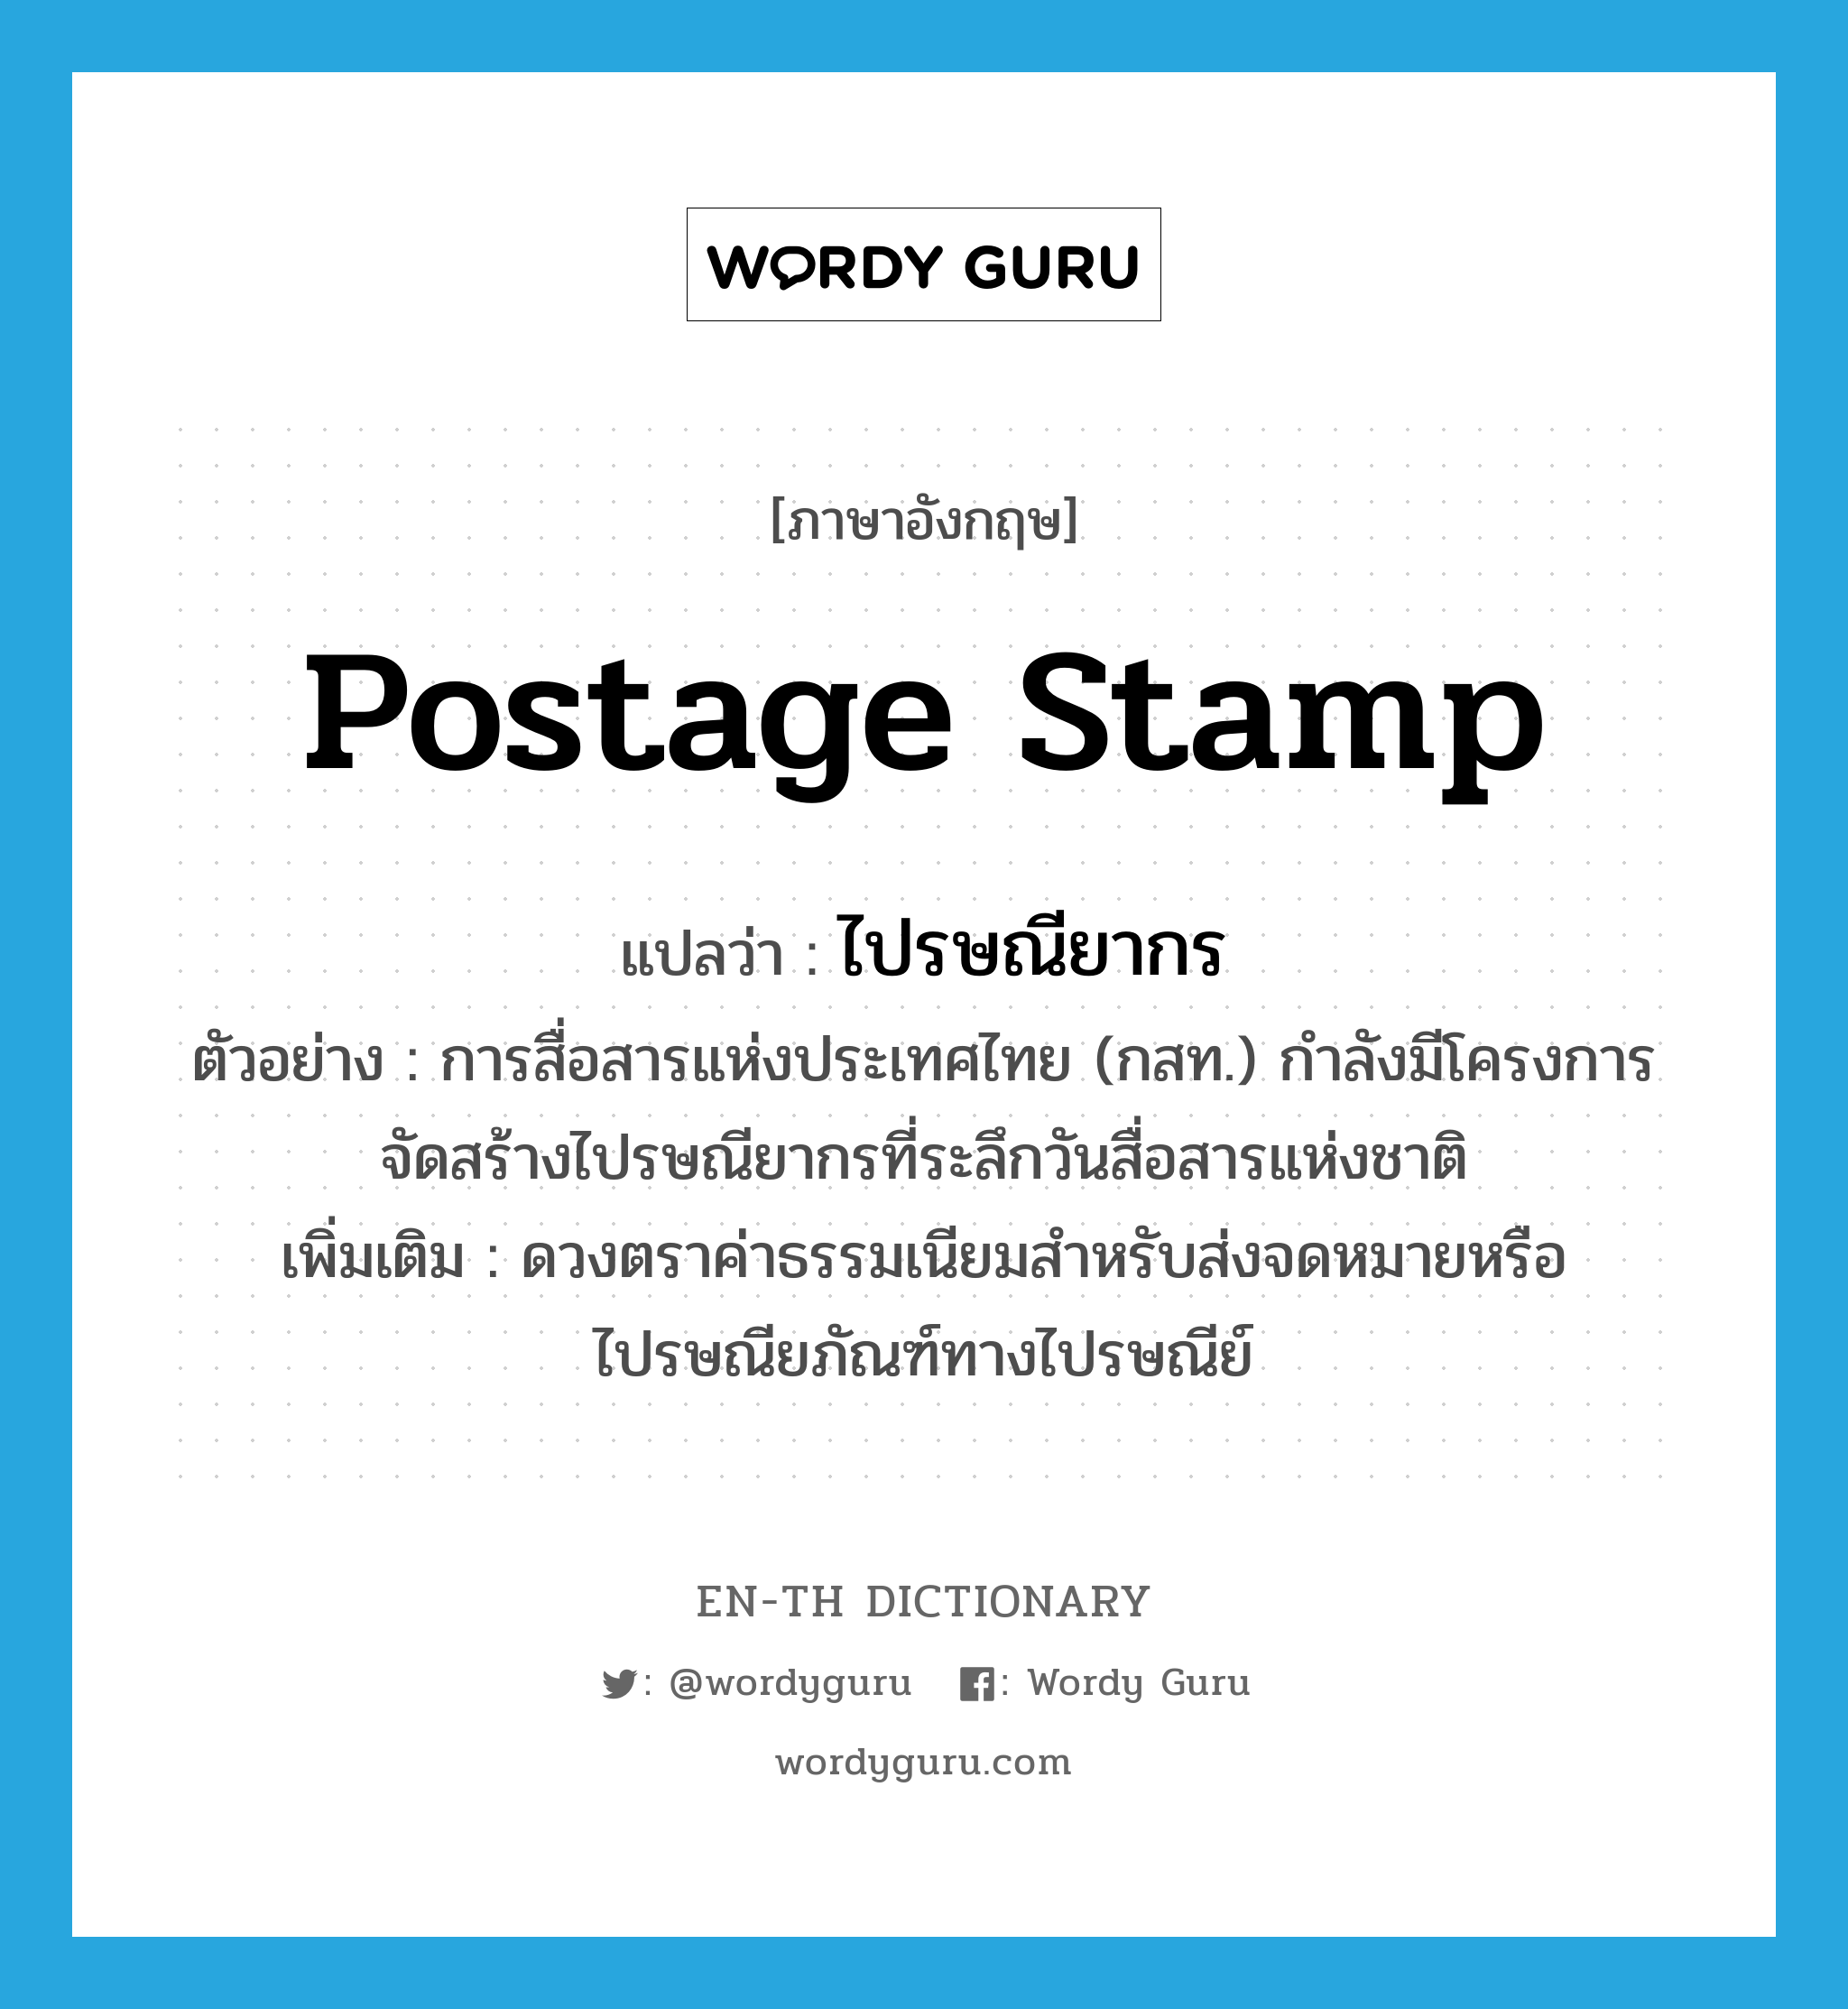 postage stamp แปลว่า?, คำศัพท์ภาษาอังกฤษ postage stamp แปลว่า ไปรษณียากร ประเภท N ตัวอย่าง การสื่อสารแห่งประเทศไทย (กสท.) กำลังมีโครงการจัดสร้างไปรษณียากรที่ระลึกวันสื่อสารแห่งชาติ เพิ่มเติม ดวงตราค่าธรรมเนียมสำหรับส่งจดหมายหรือไปรษณียภัณฑ์ทางไปรษณีย์ หมวด N